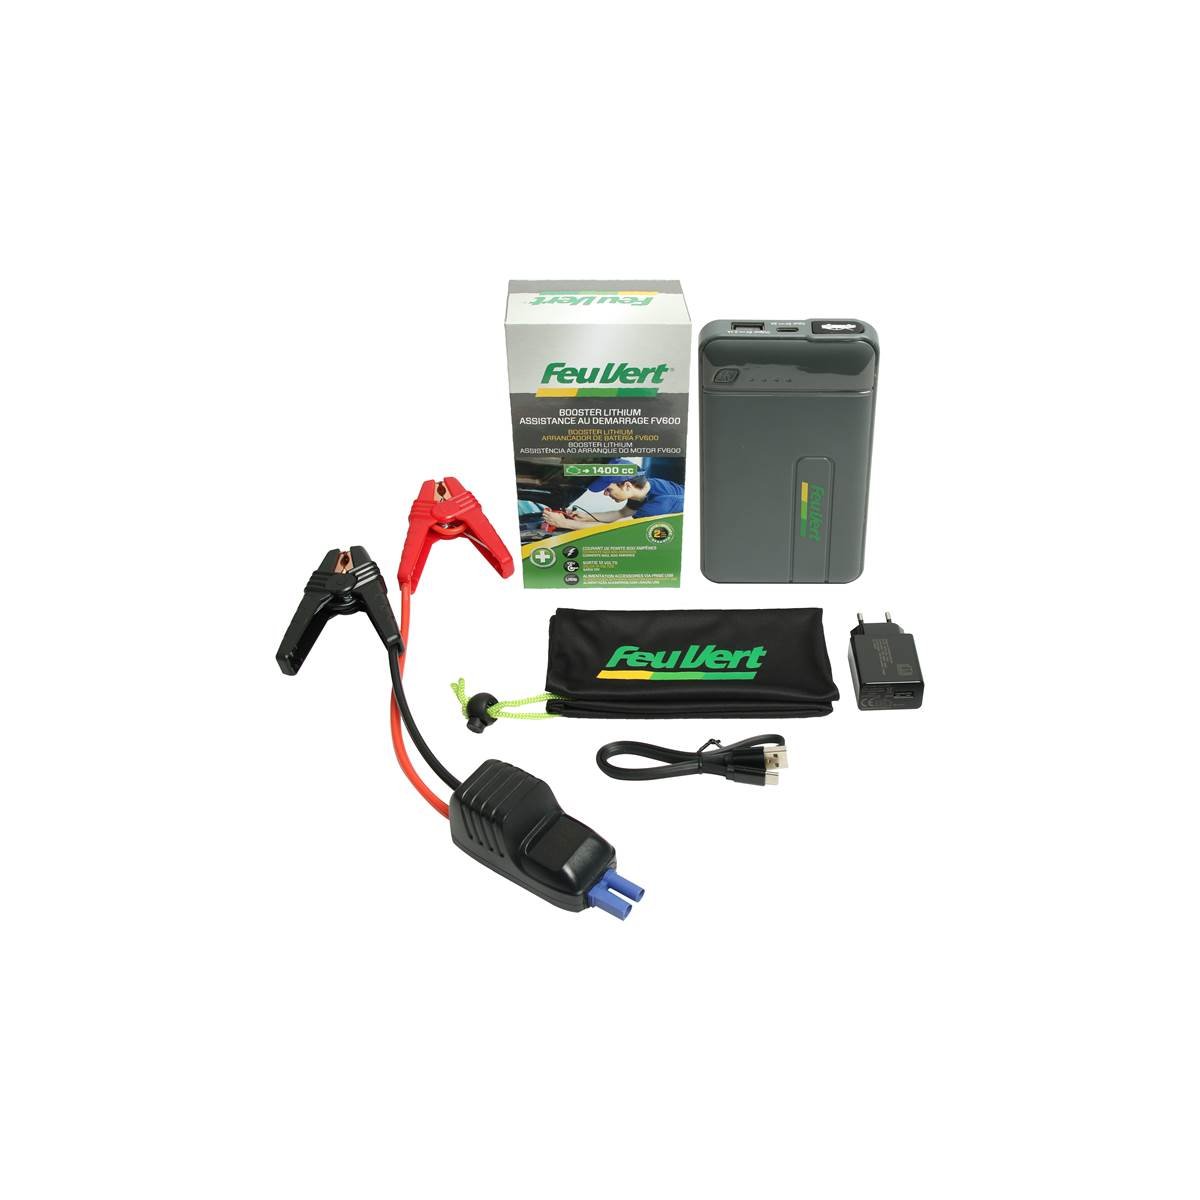 Booster batterie, chargeur de batterie, câble de démarrage - Feu Vert